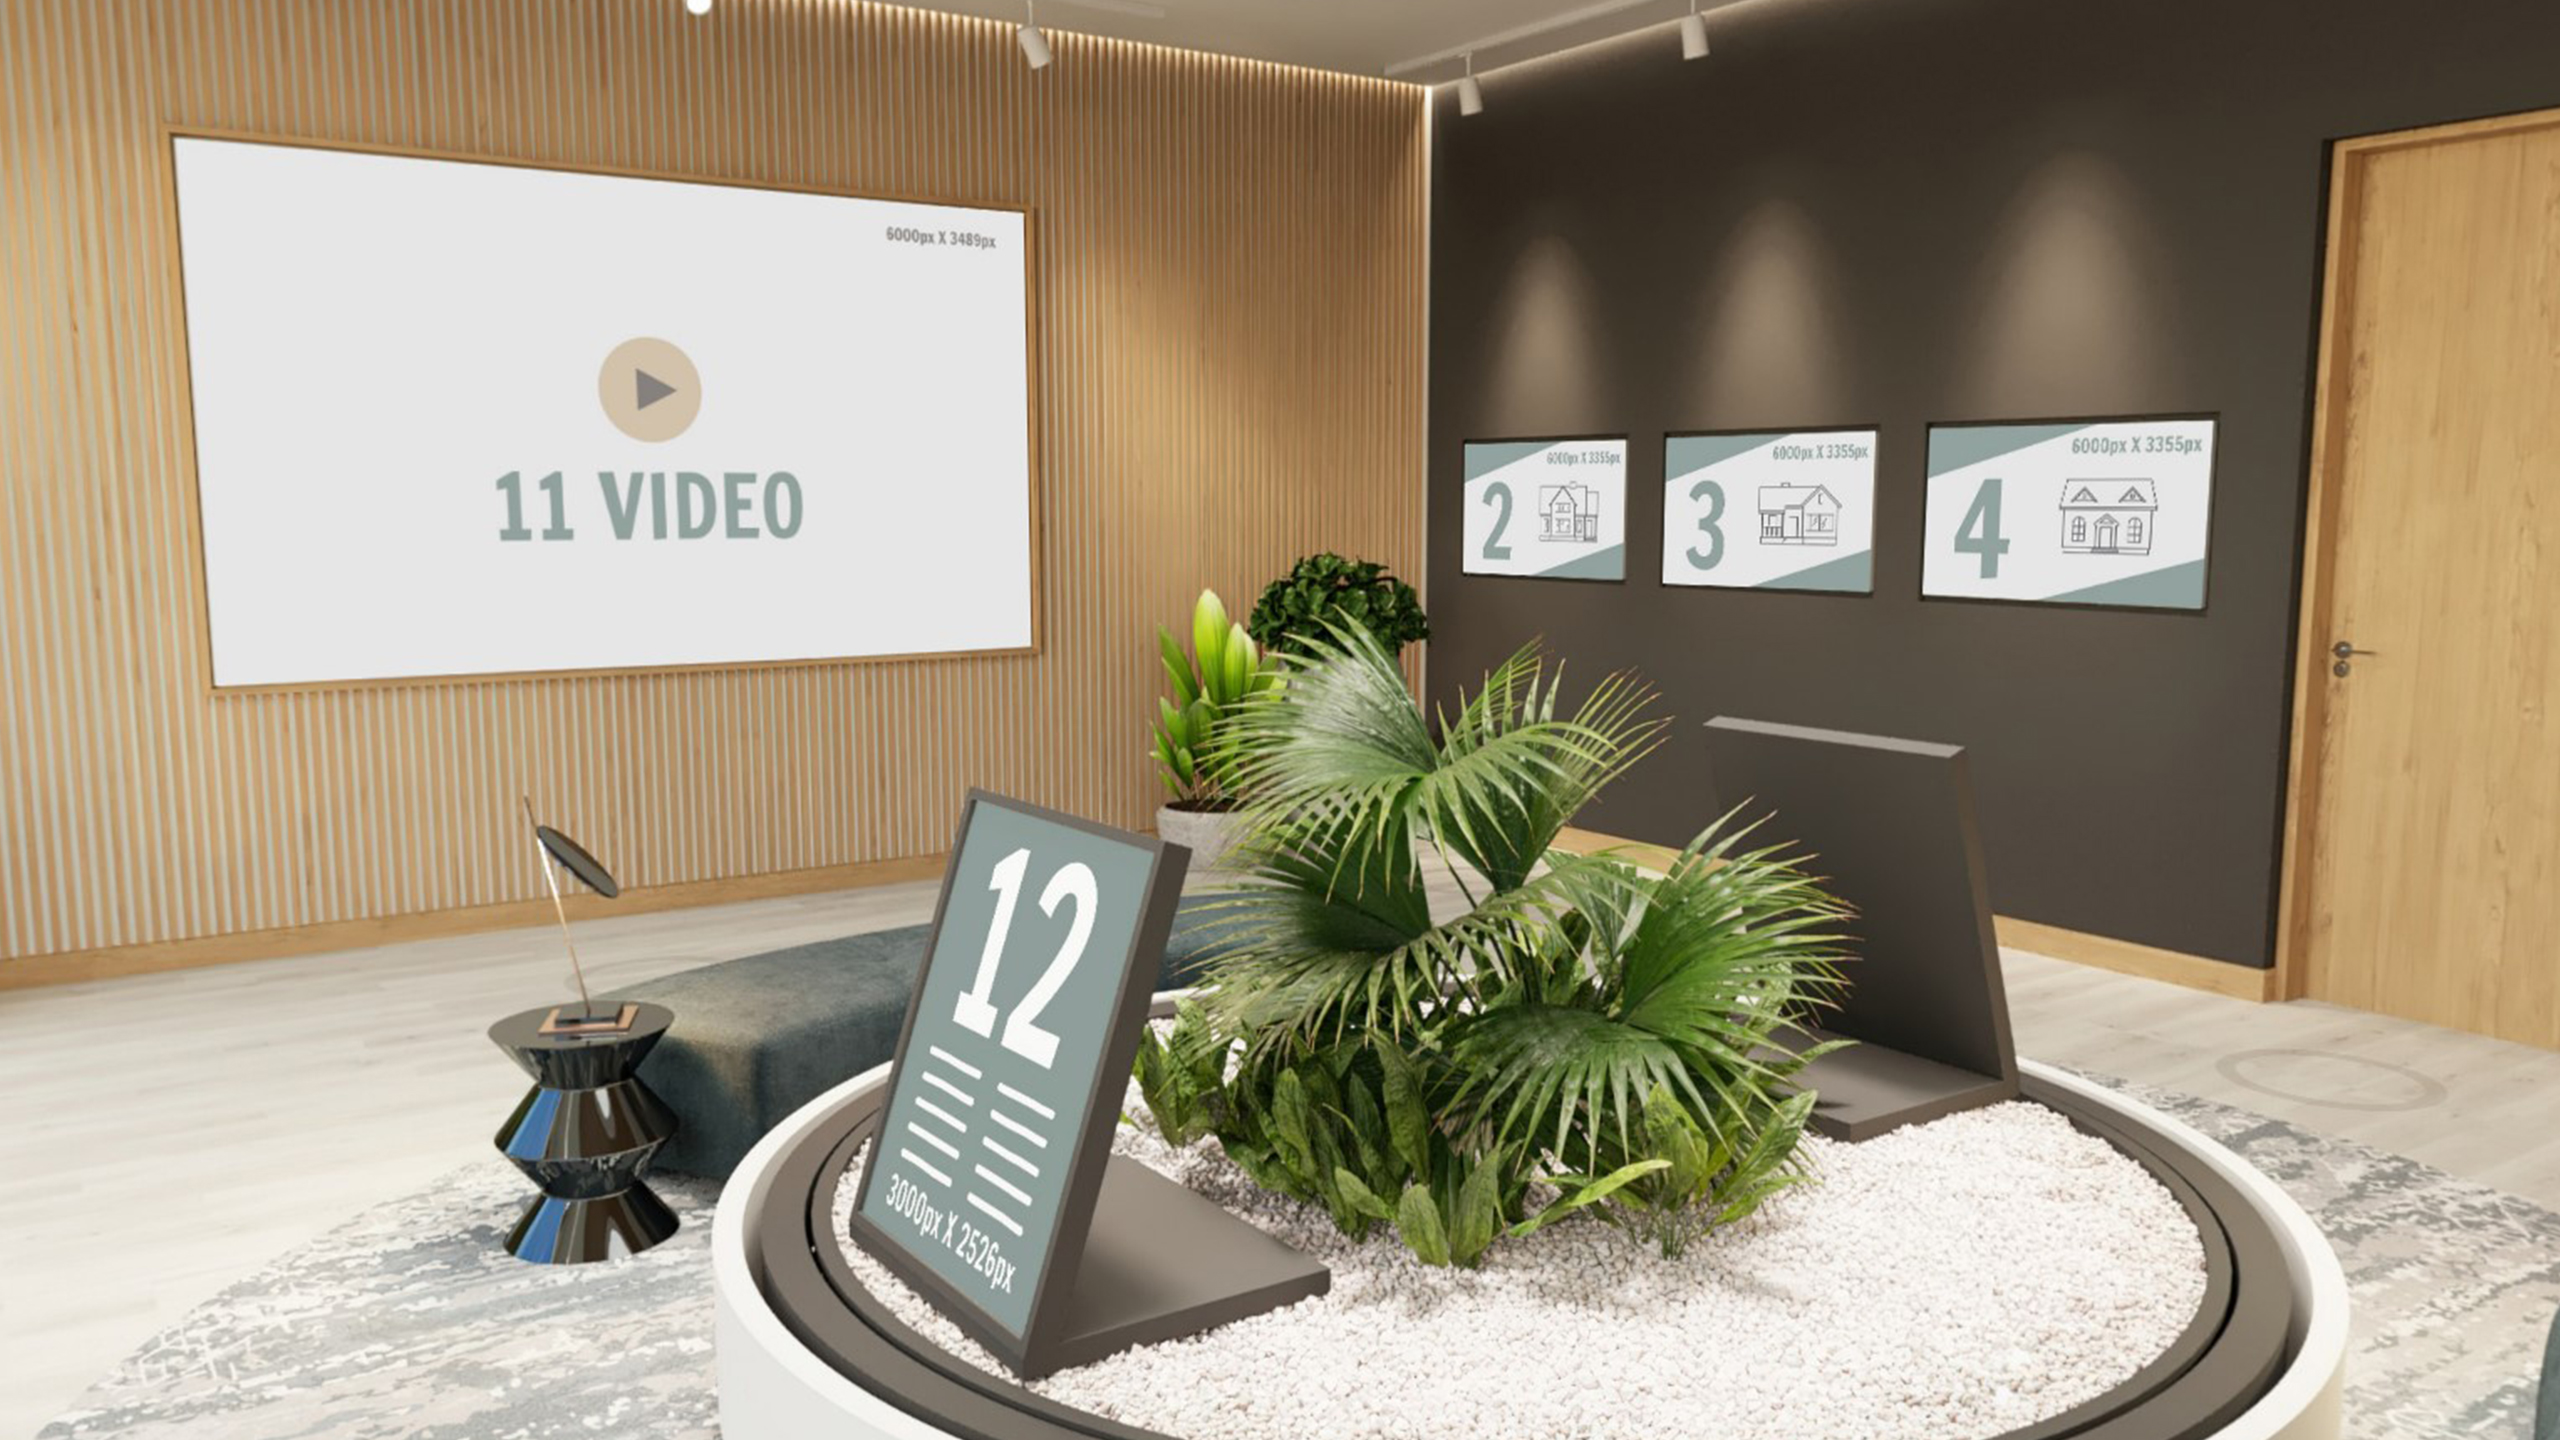 Digitaler Showroom für die Präsentation von Unternehmensinhalten Verkaufsraum Galerie